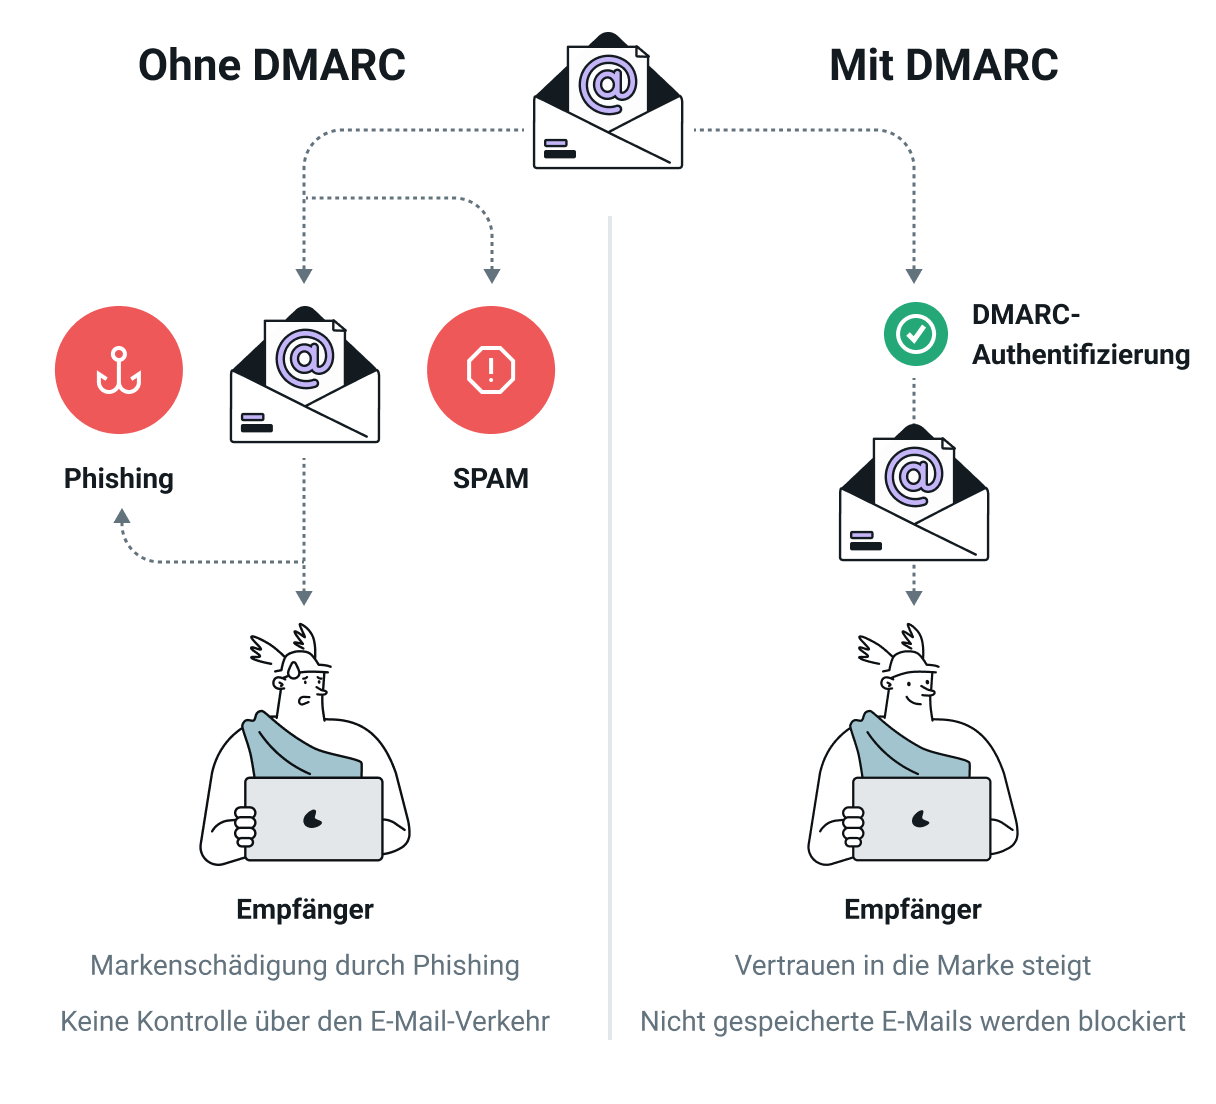 Abbildung, die E-Mail-Versand mit und ohne DMARC miteinander vergleicht